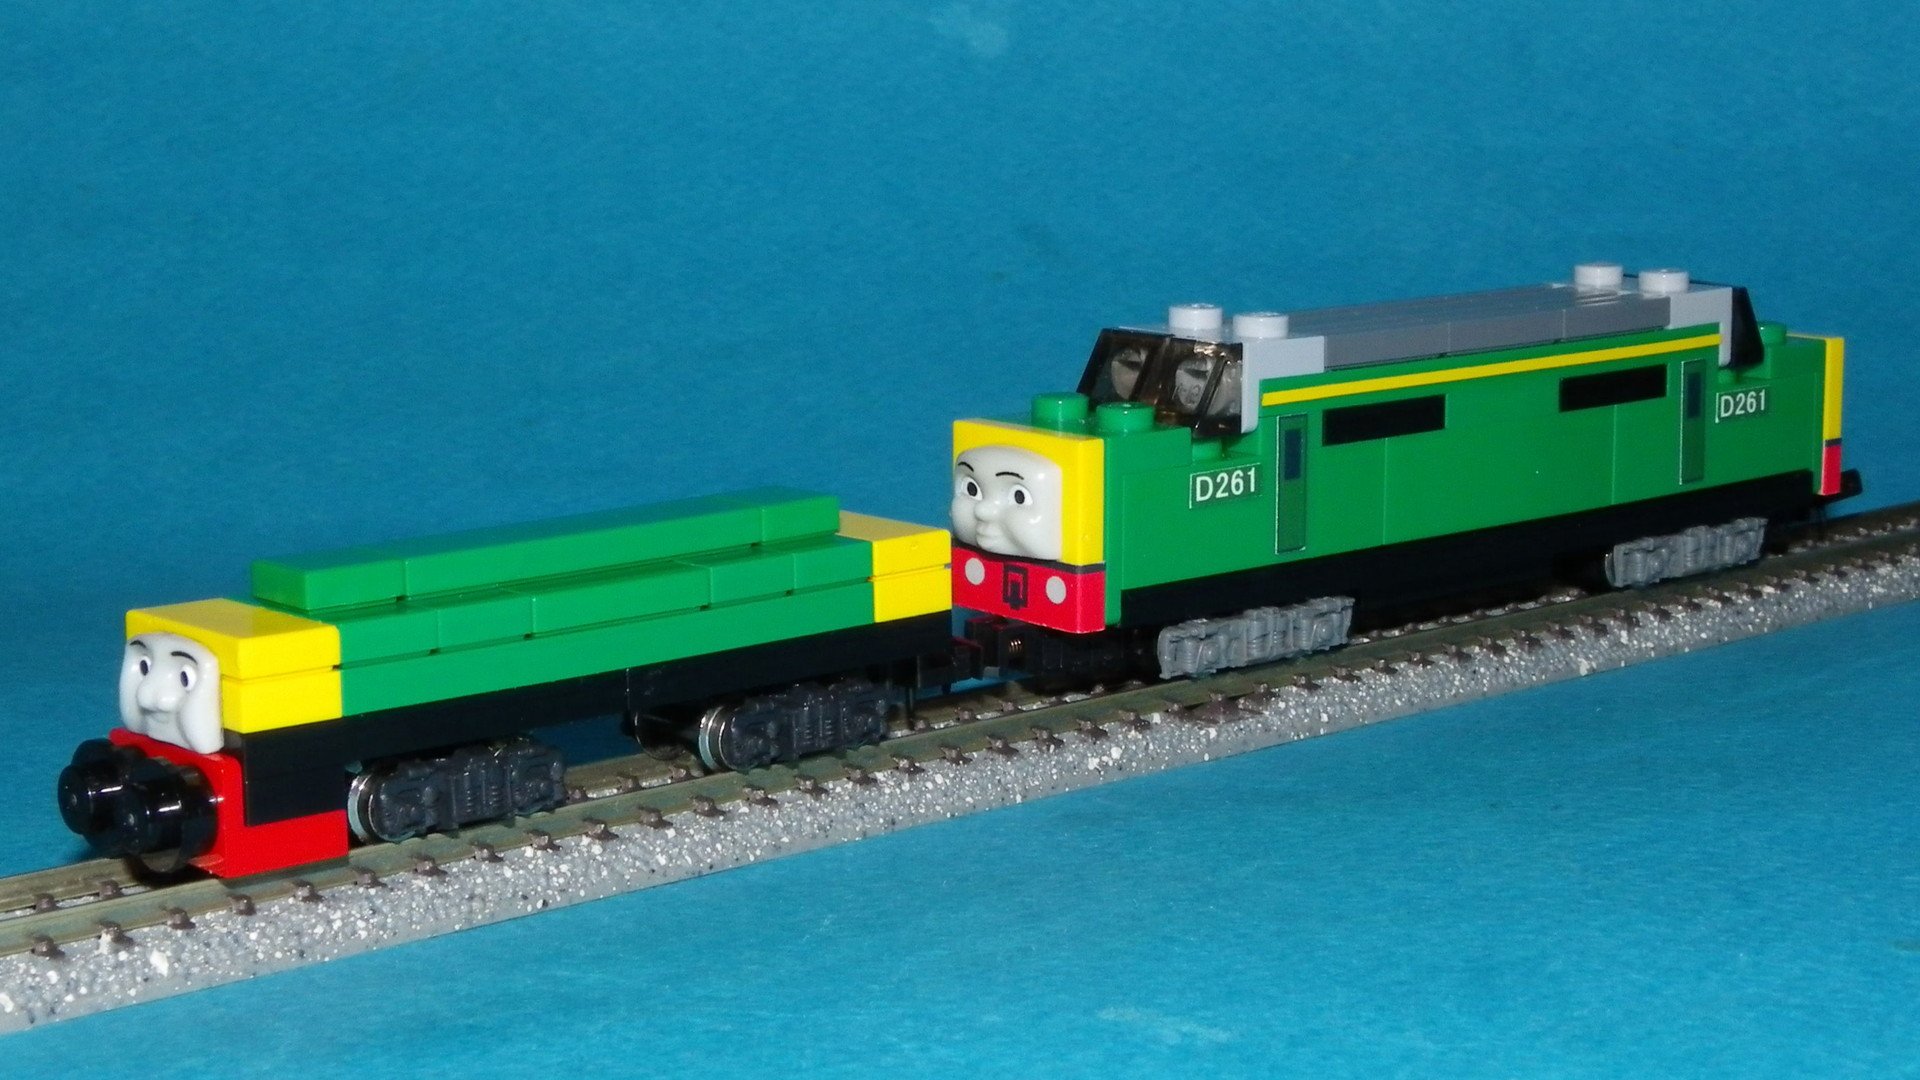 Small Thomas World Thomas Friends N Gauge Lego Train Brake Tender きかんしゃトーマス ｎゲージ レゴトレイン ブレーキテンダー 機関車の制動力不足を補うための車両です 機関車と連動するブレーキを備えており中には鉄クズが詰め込まれています